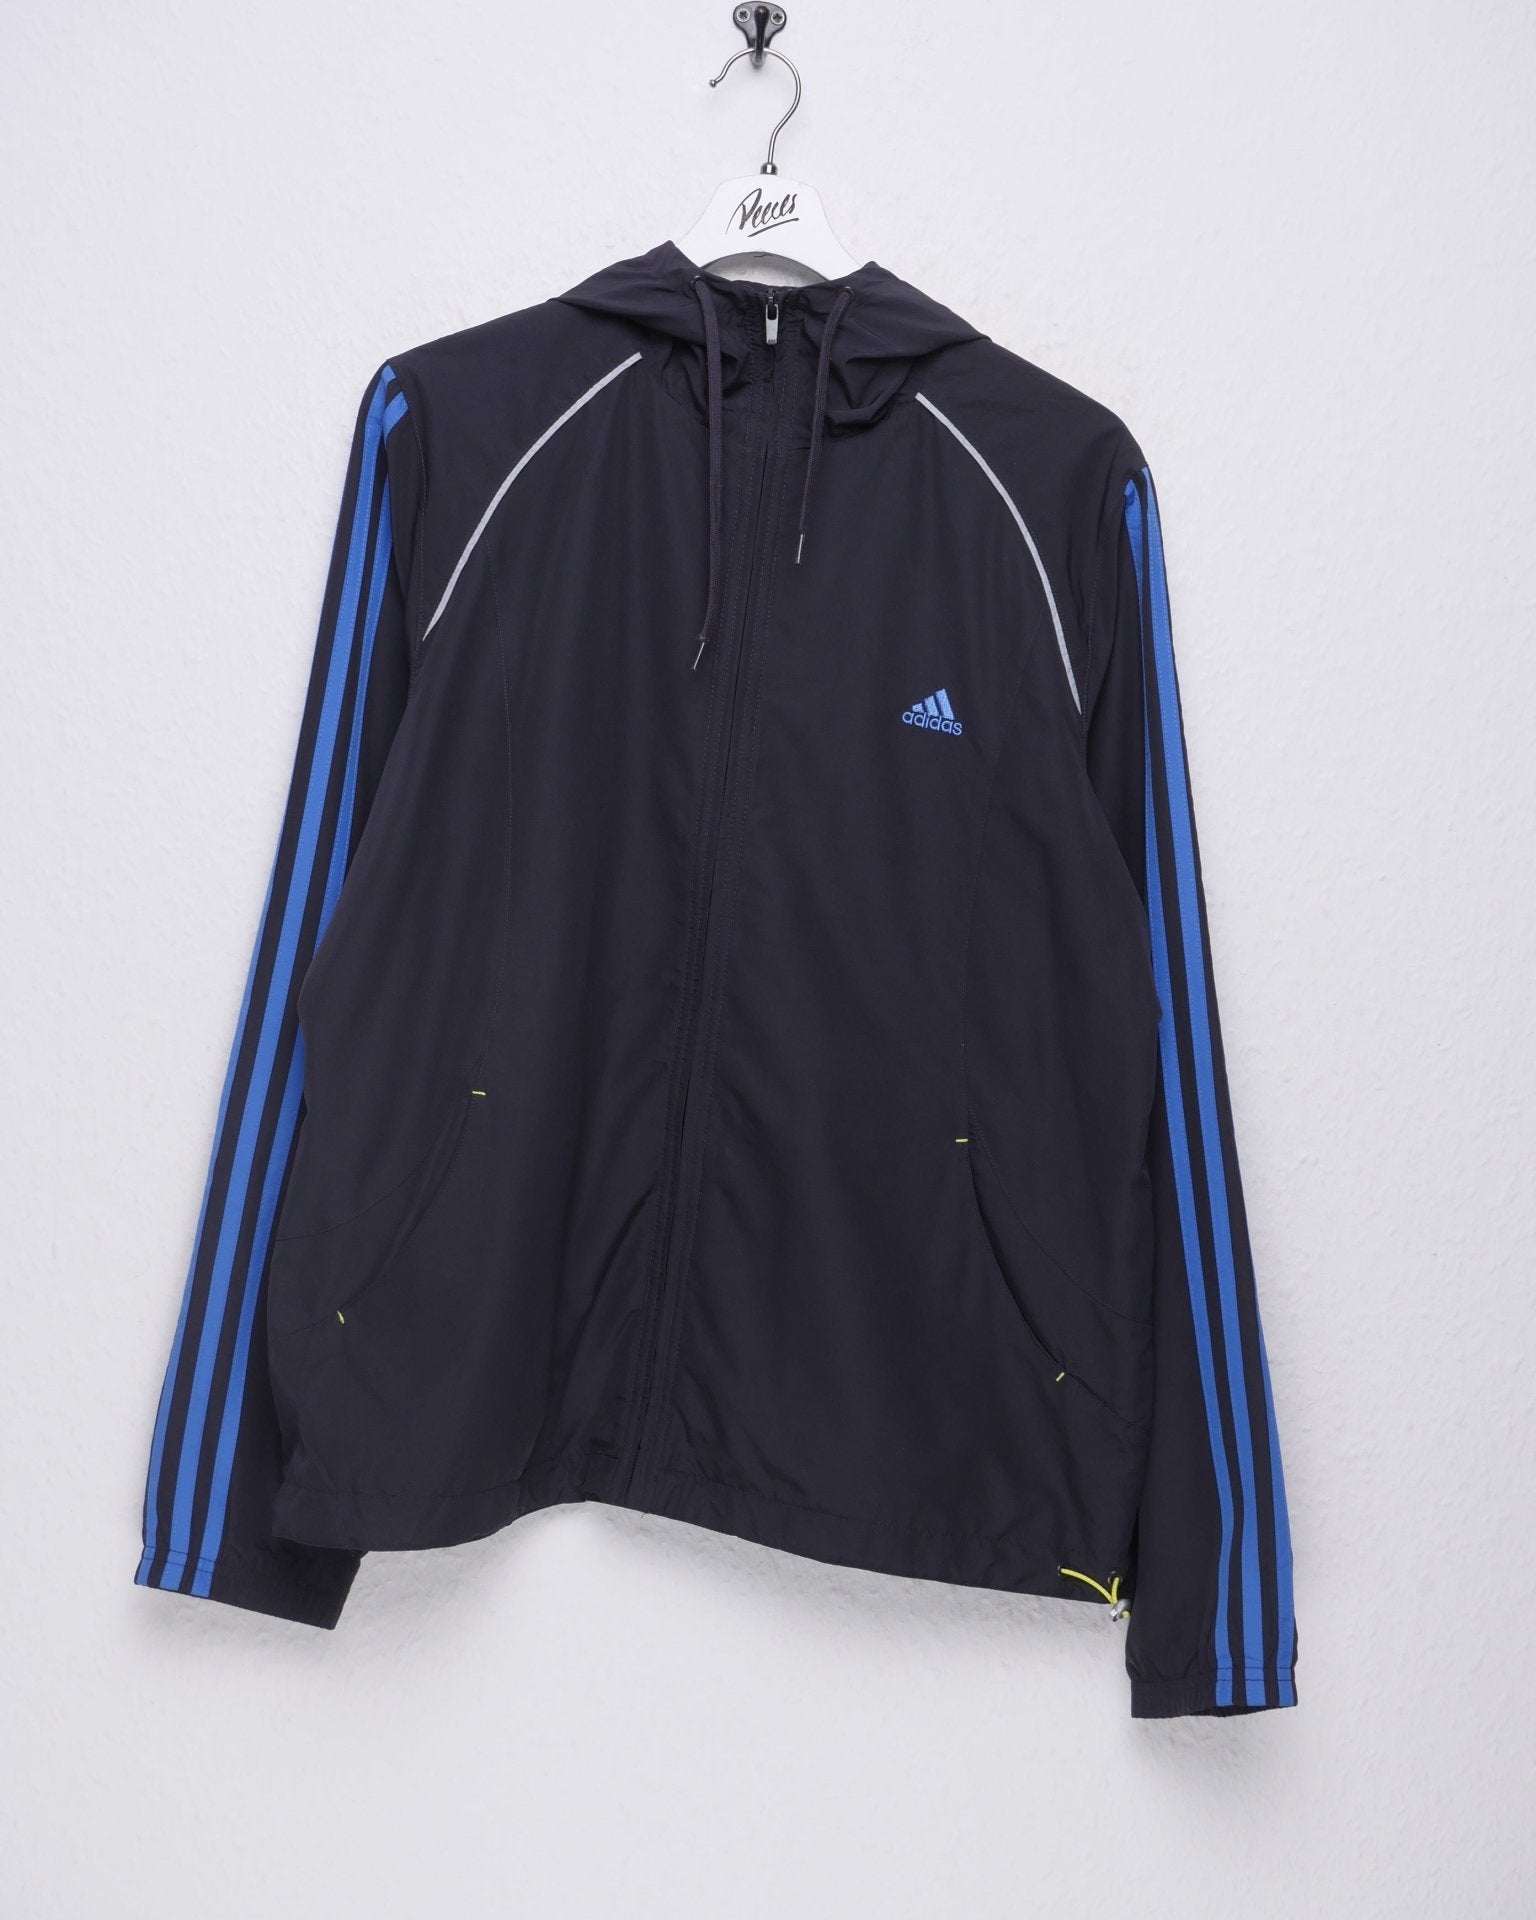 Adidas emboidered Logo Vintage Track Jacke - Peeces